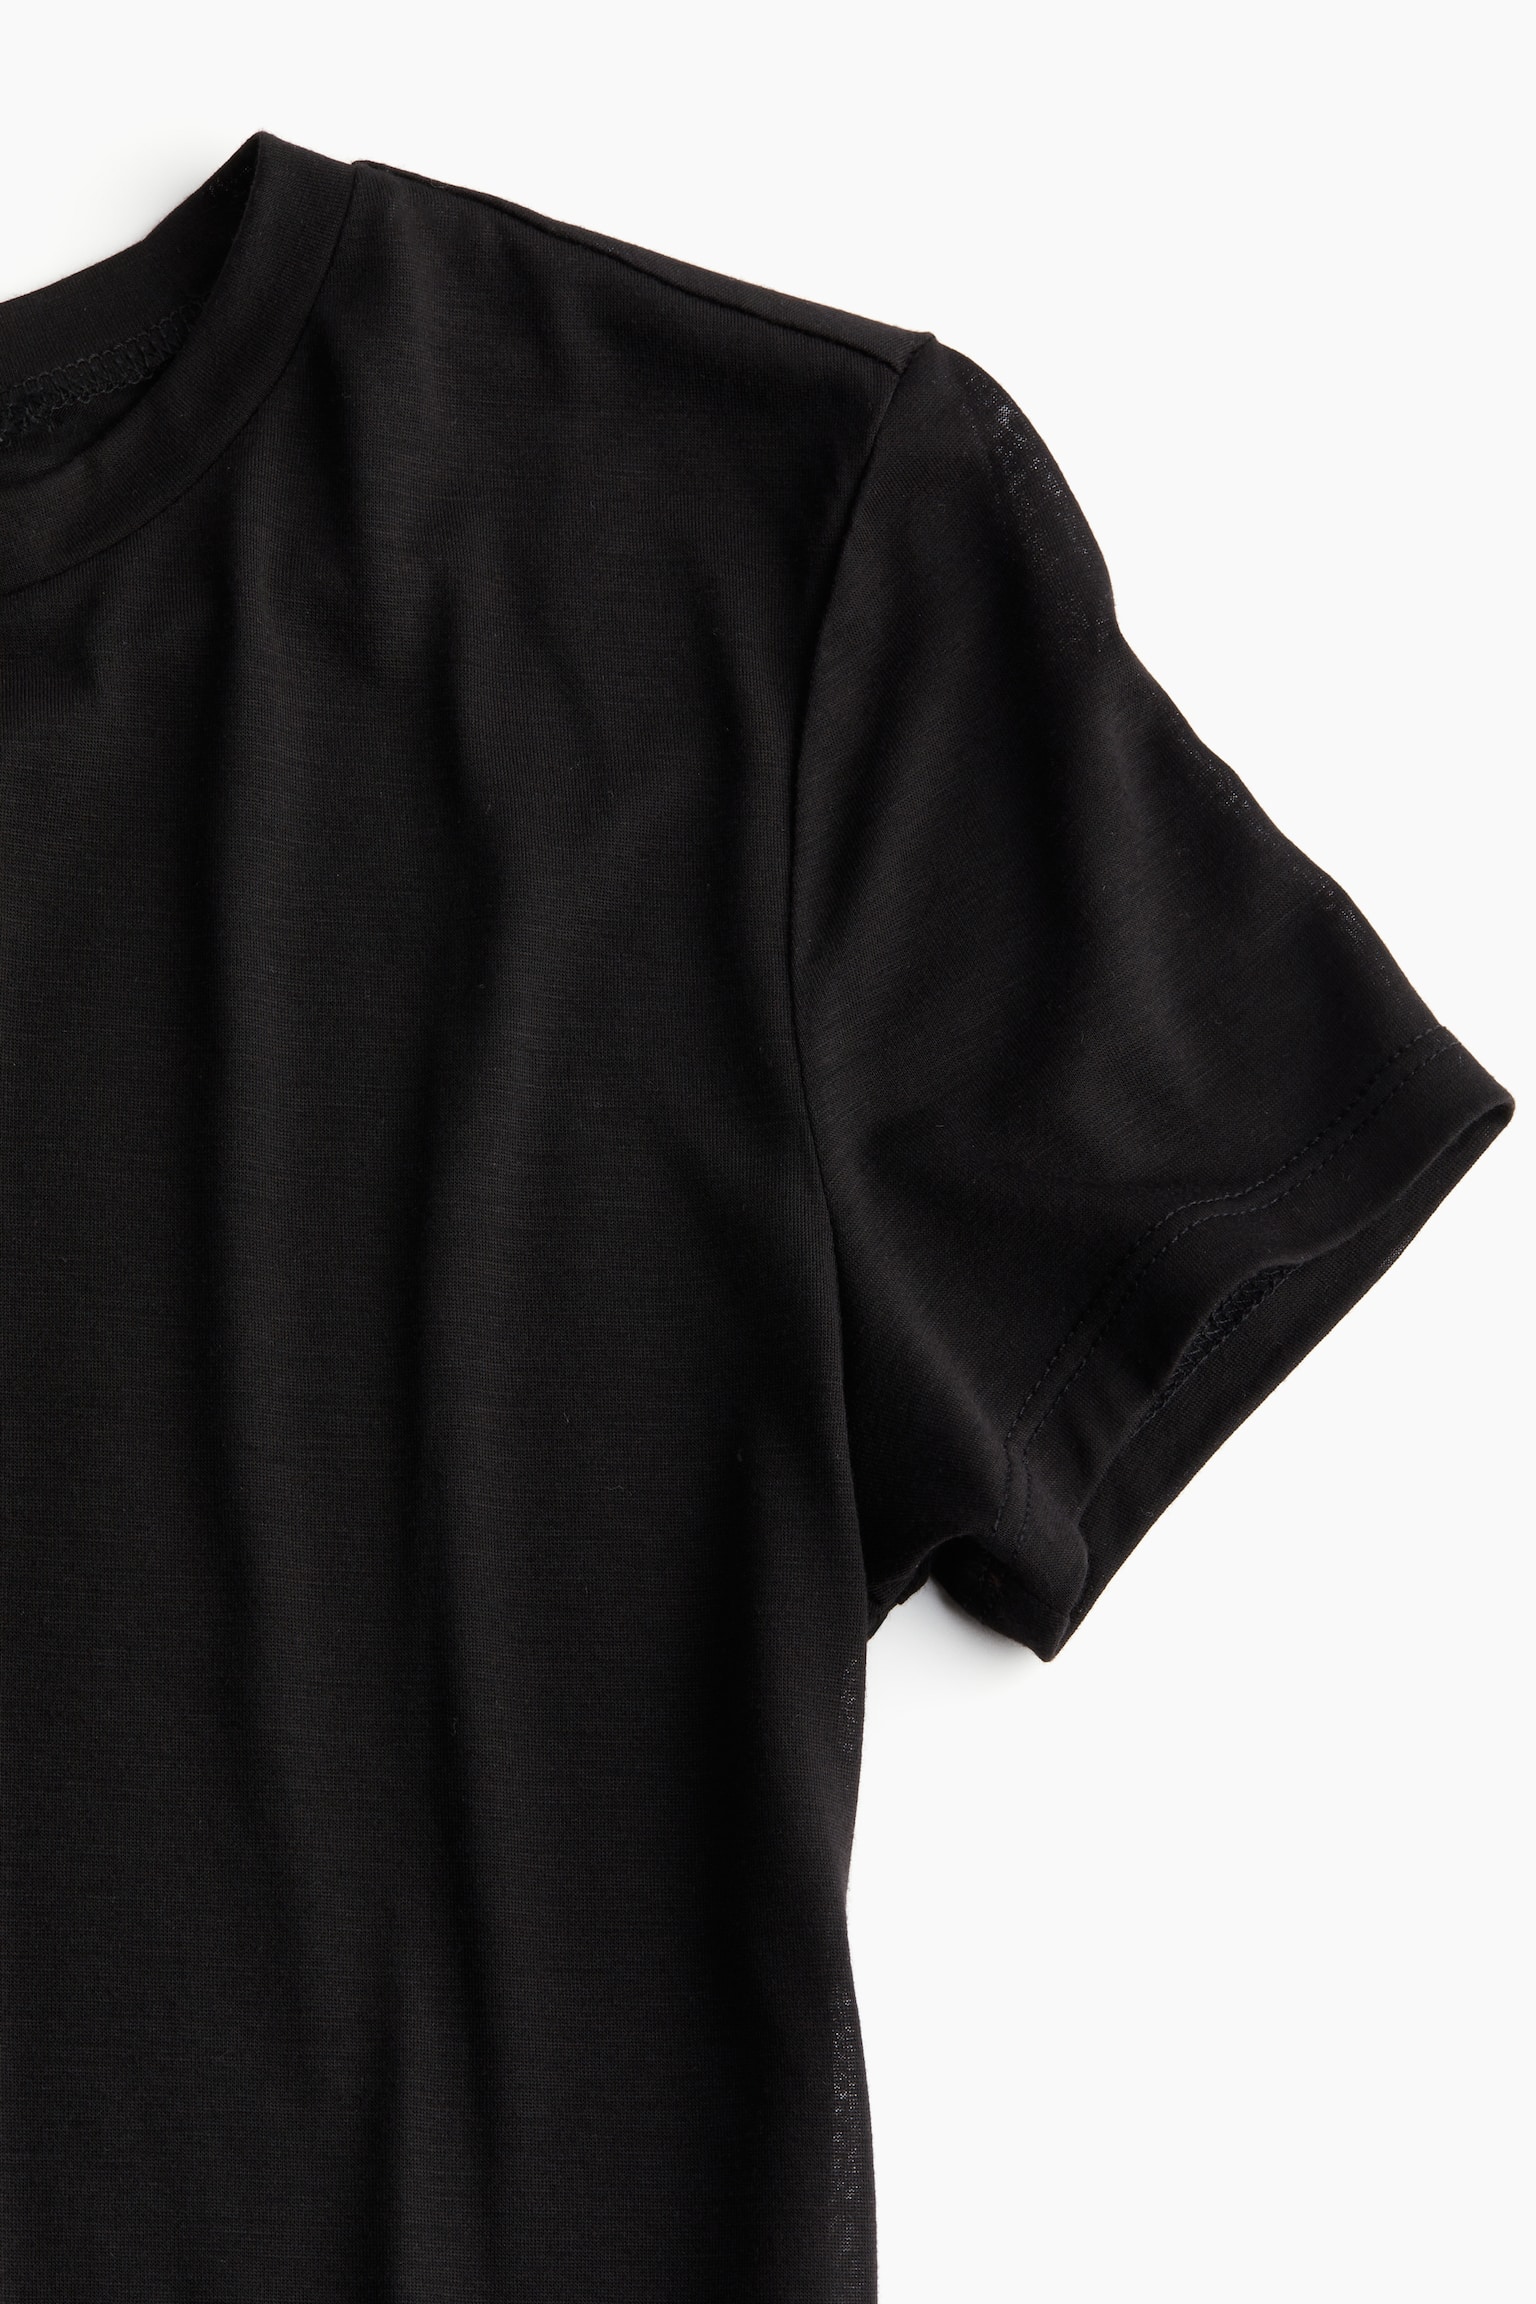 T-shirt ajusté - Noir/Blanc/Gris/Beige clair - 5